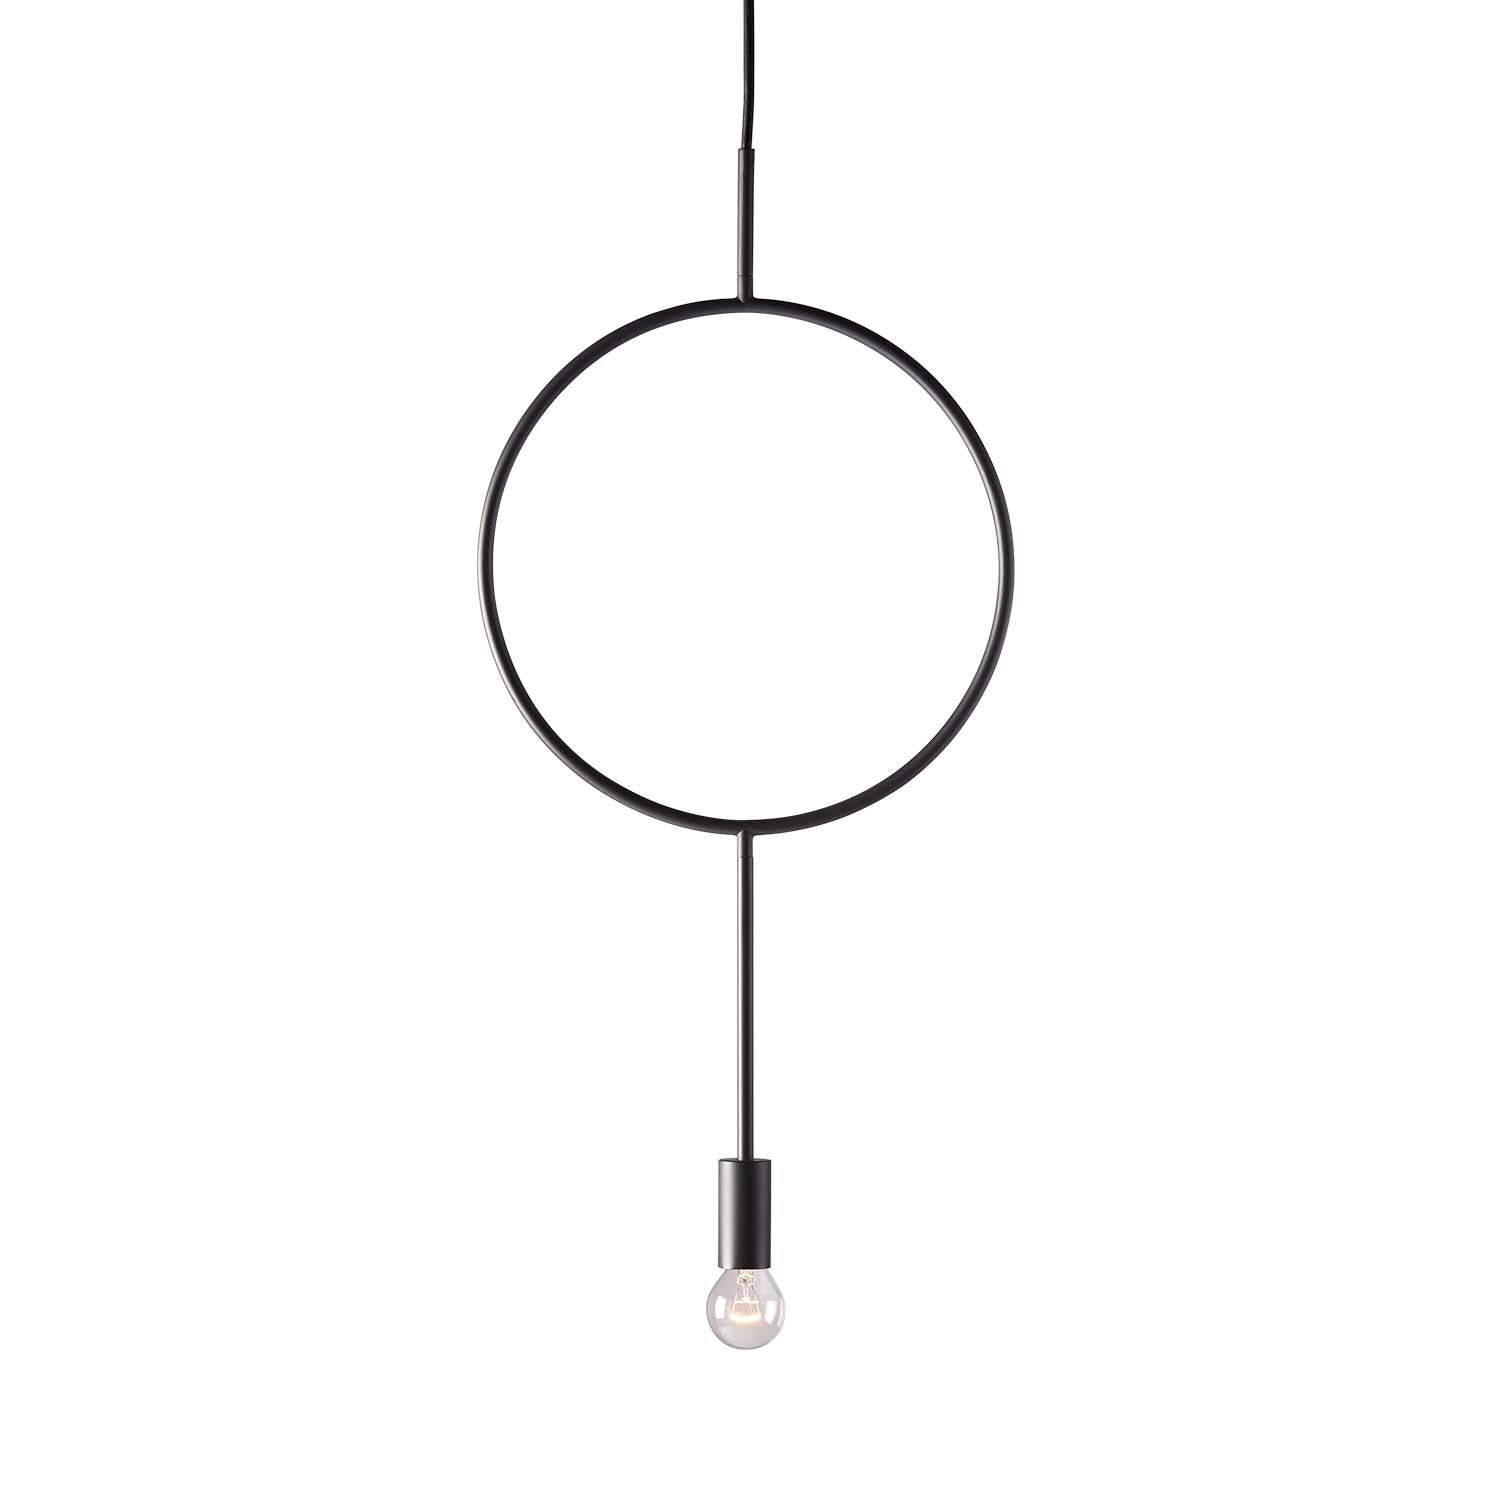 CIRCLE - Thin minimalist black pendant lamp, adult bedroom